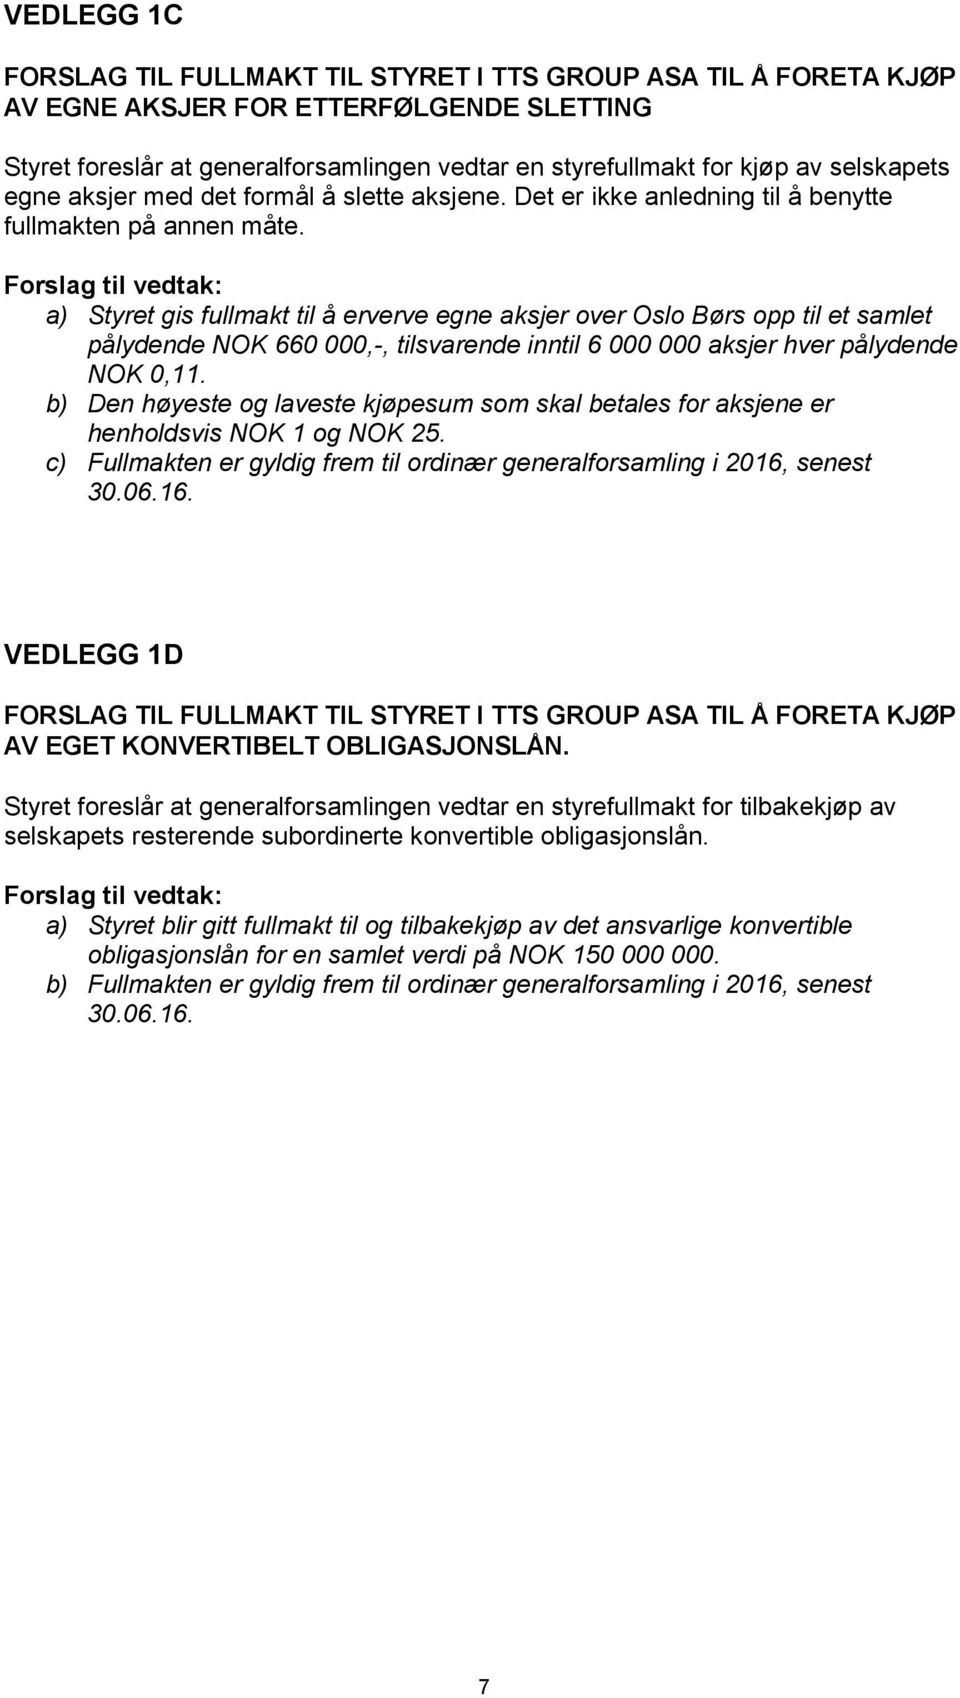 a) Styret gis fullmakt til å erverve egne aksjer over Oslo Børs opp til et samlet pålydende NOK 660 000,-, tilsvarende inntil 6 000 000 aksjer hver pålydende NOK 0,11.